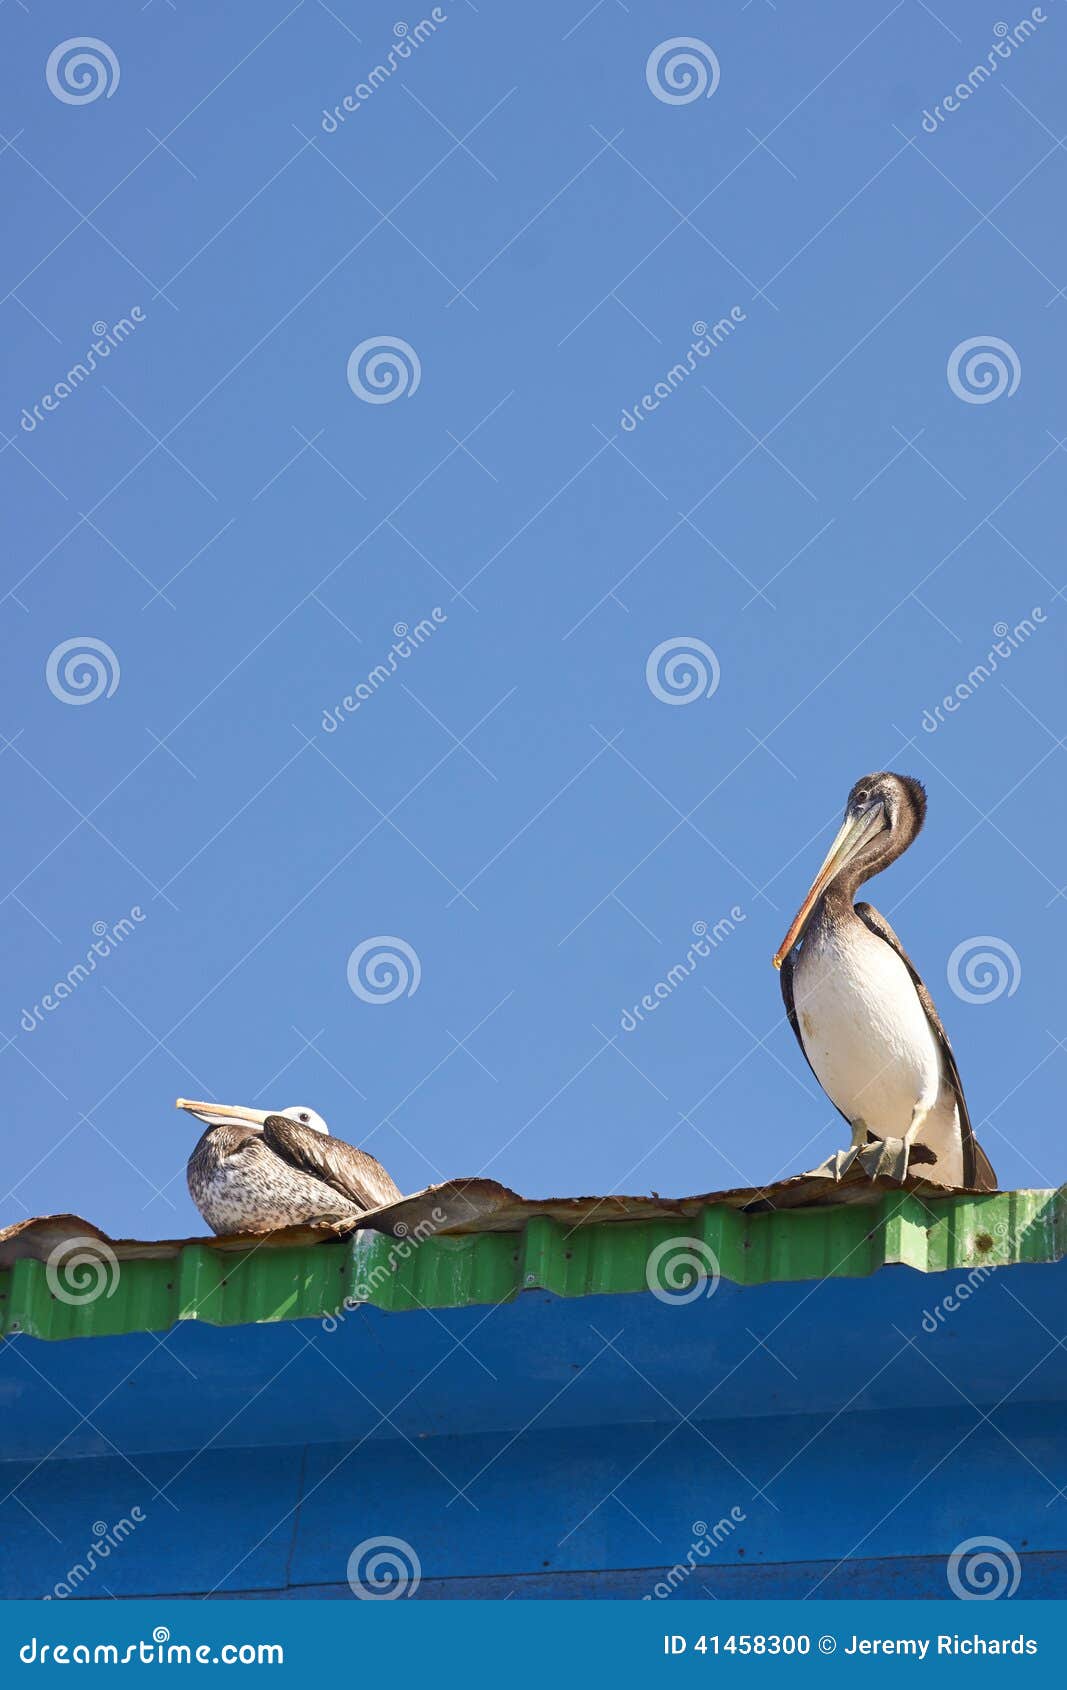 pelicans at rest